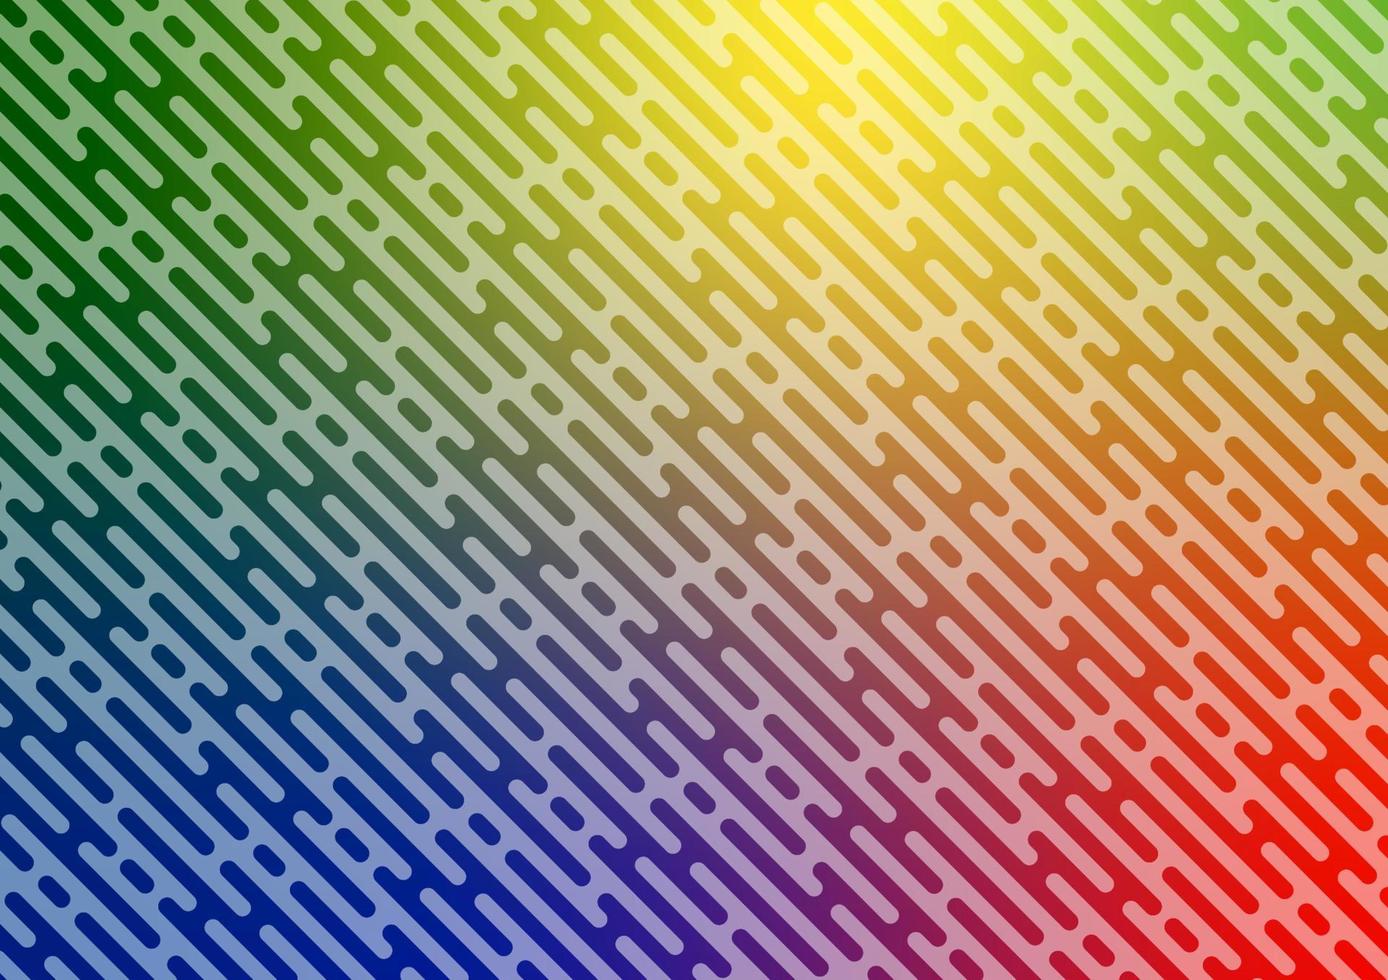 Abstract rainbow raindrop sunshine pattern background vector